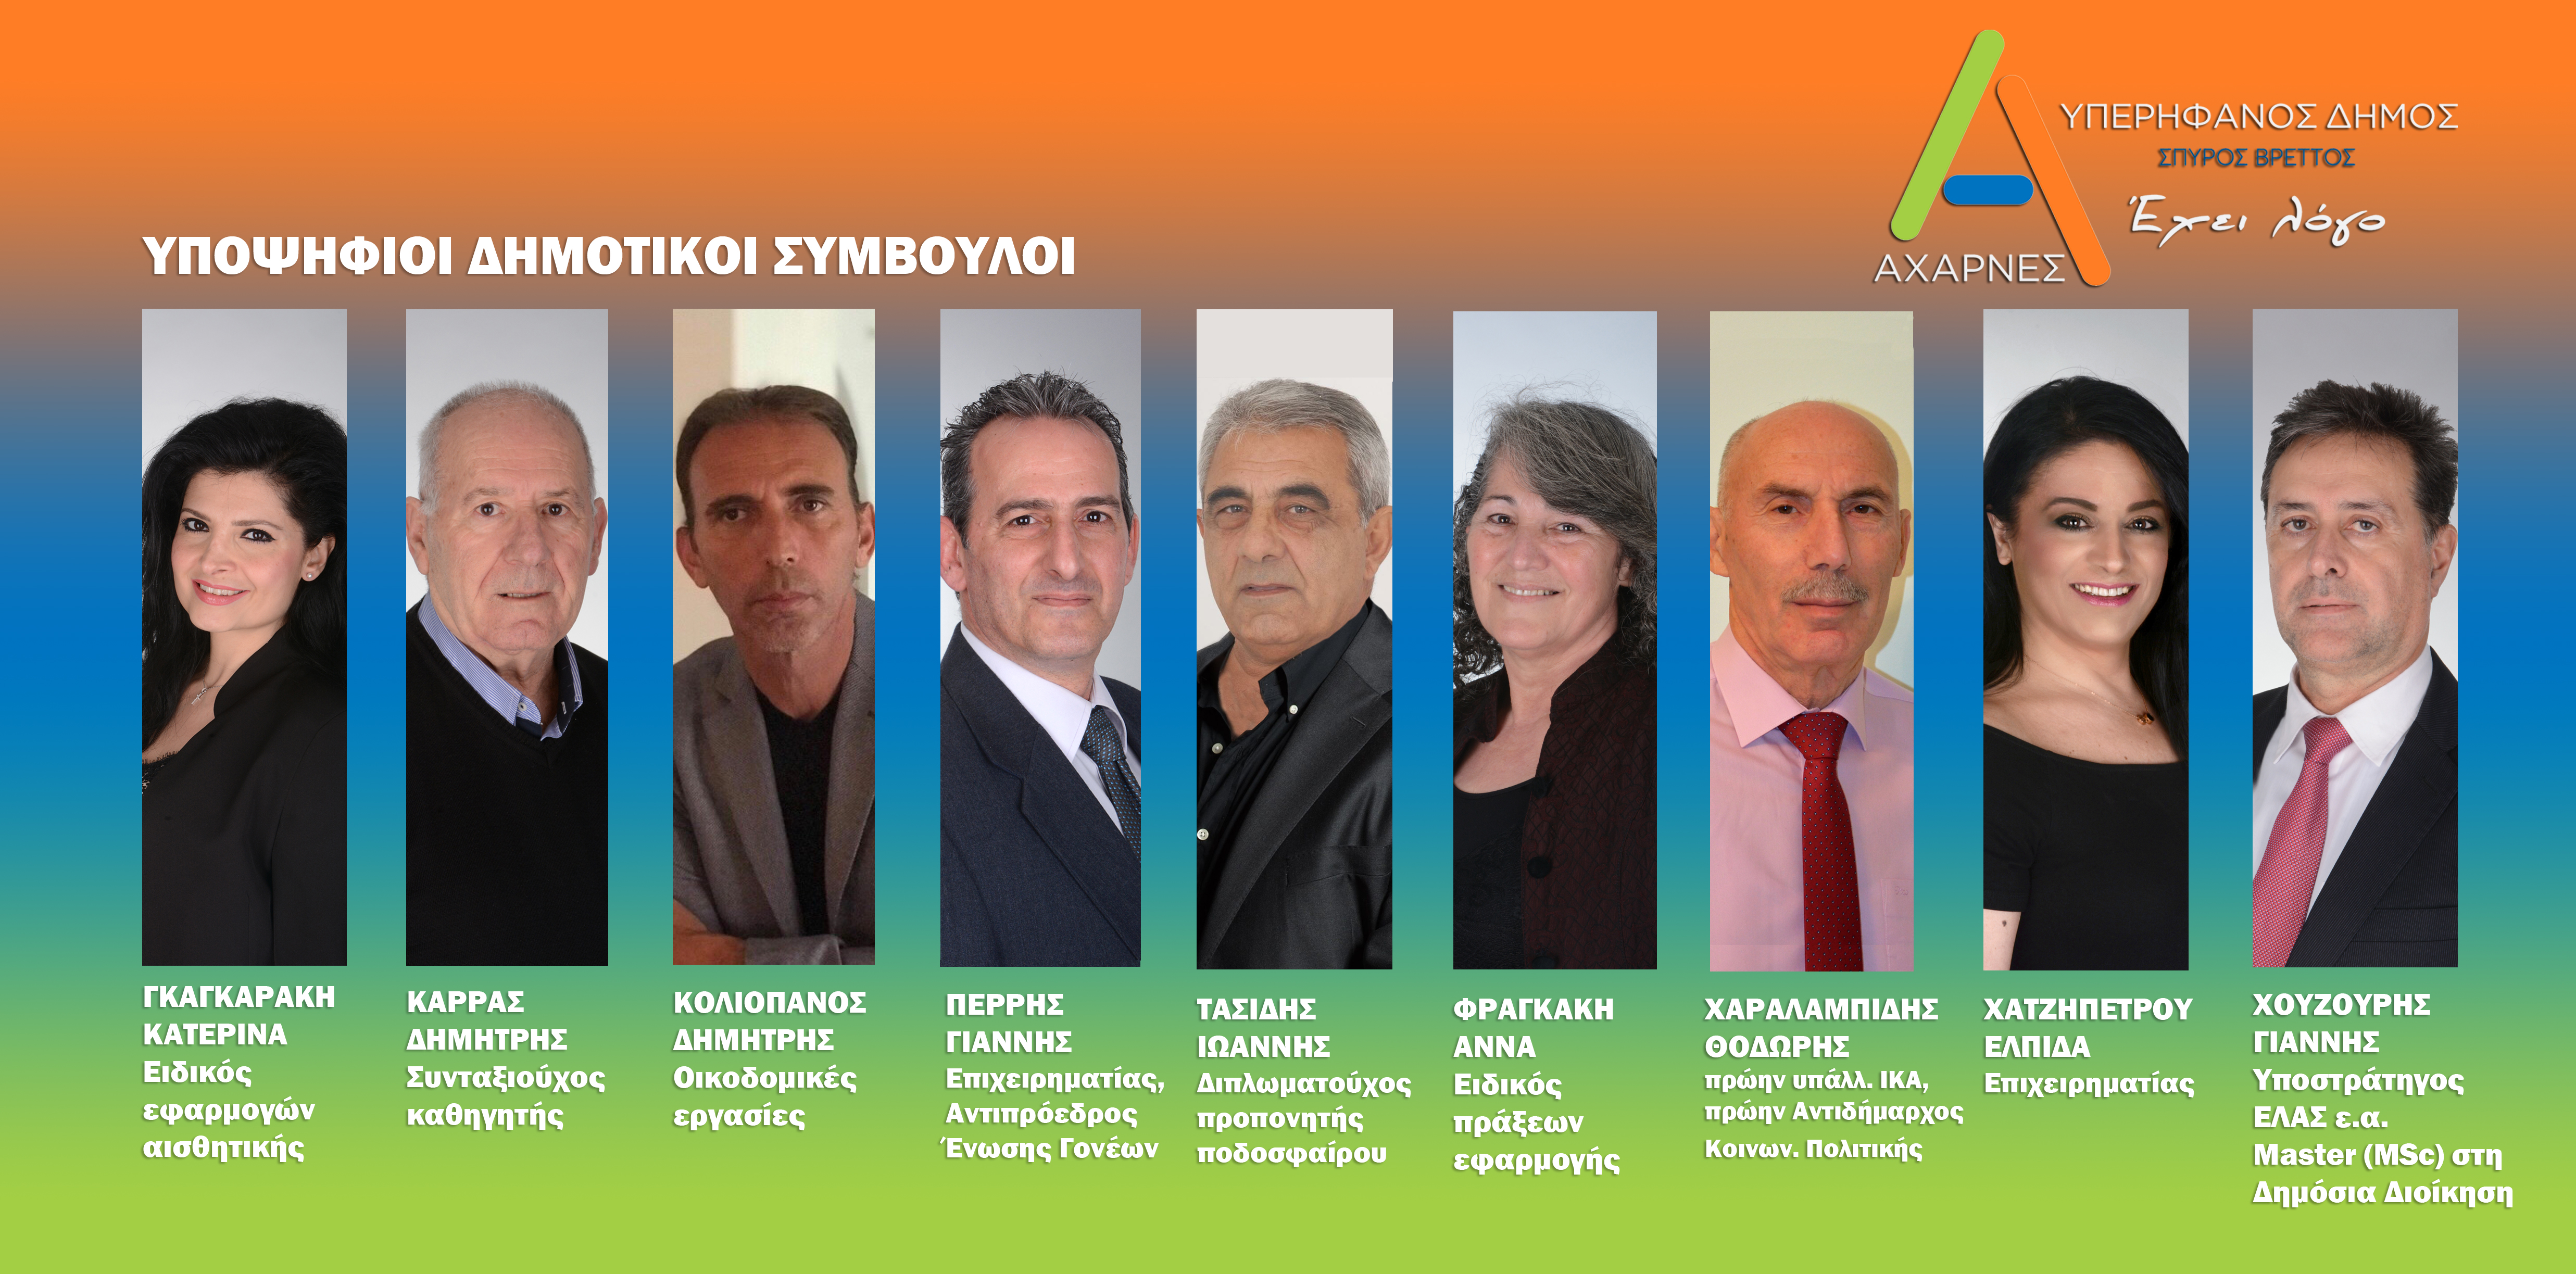 Νέες ανακοινώσεις υποψηφίων από τον Συνδυασμό του Σπύρου Βρεττού «ΑΧΑΡΝΕΣ Υπερήφανος Δήμος»